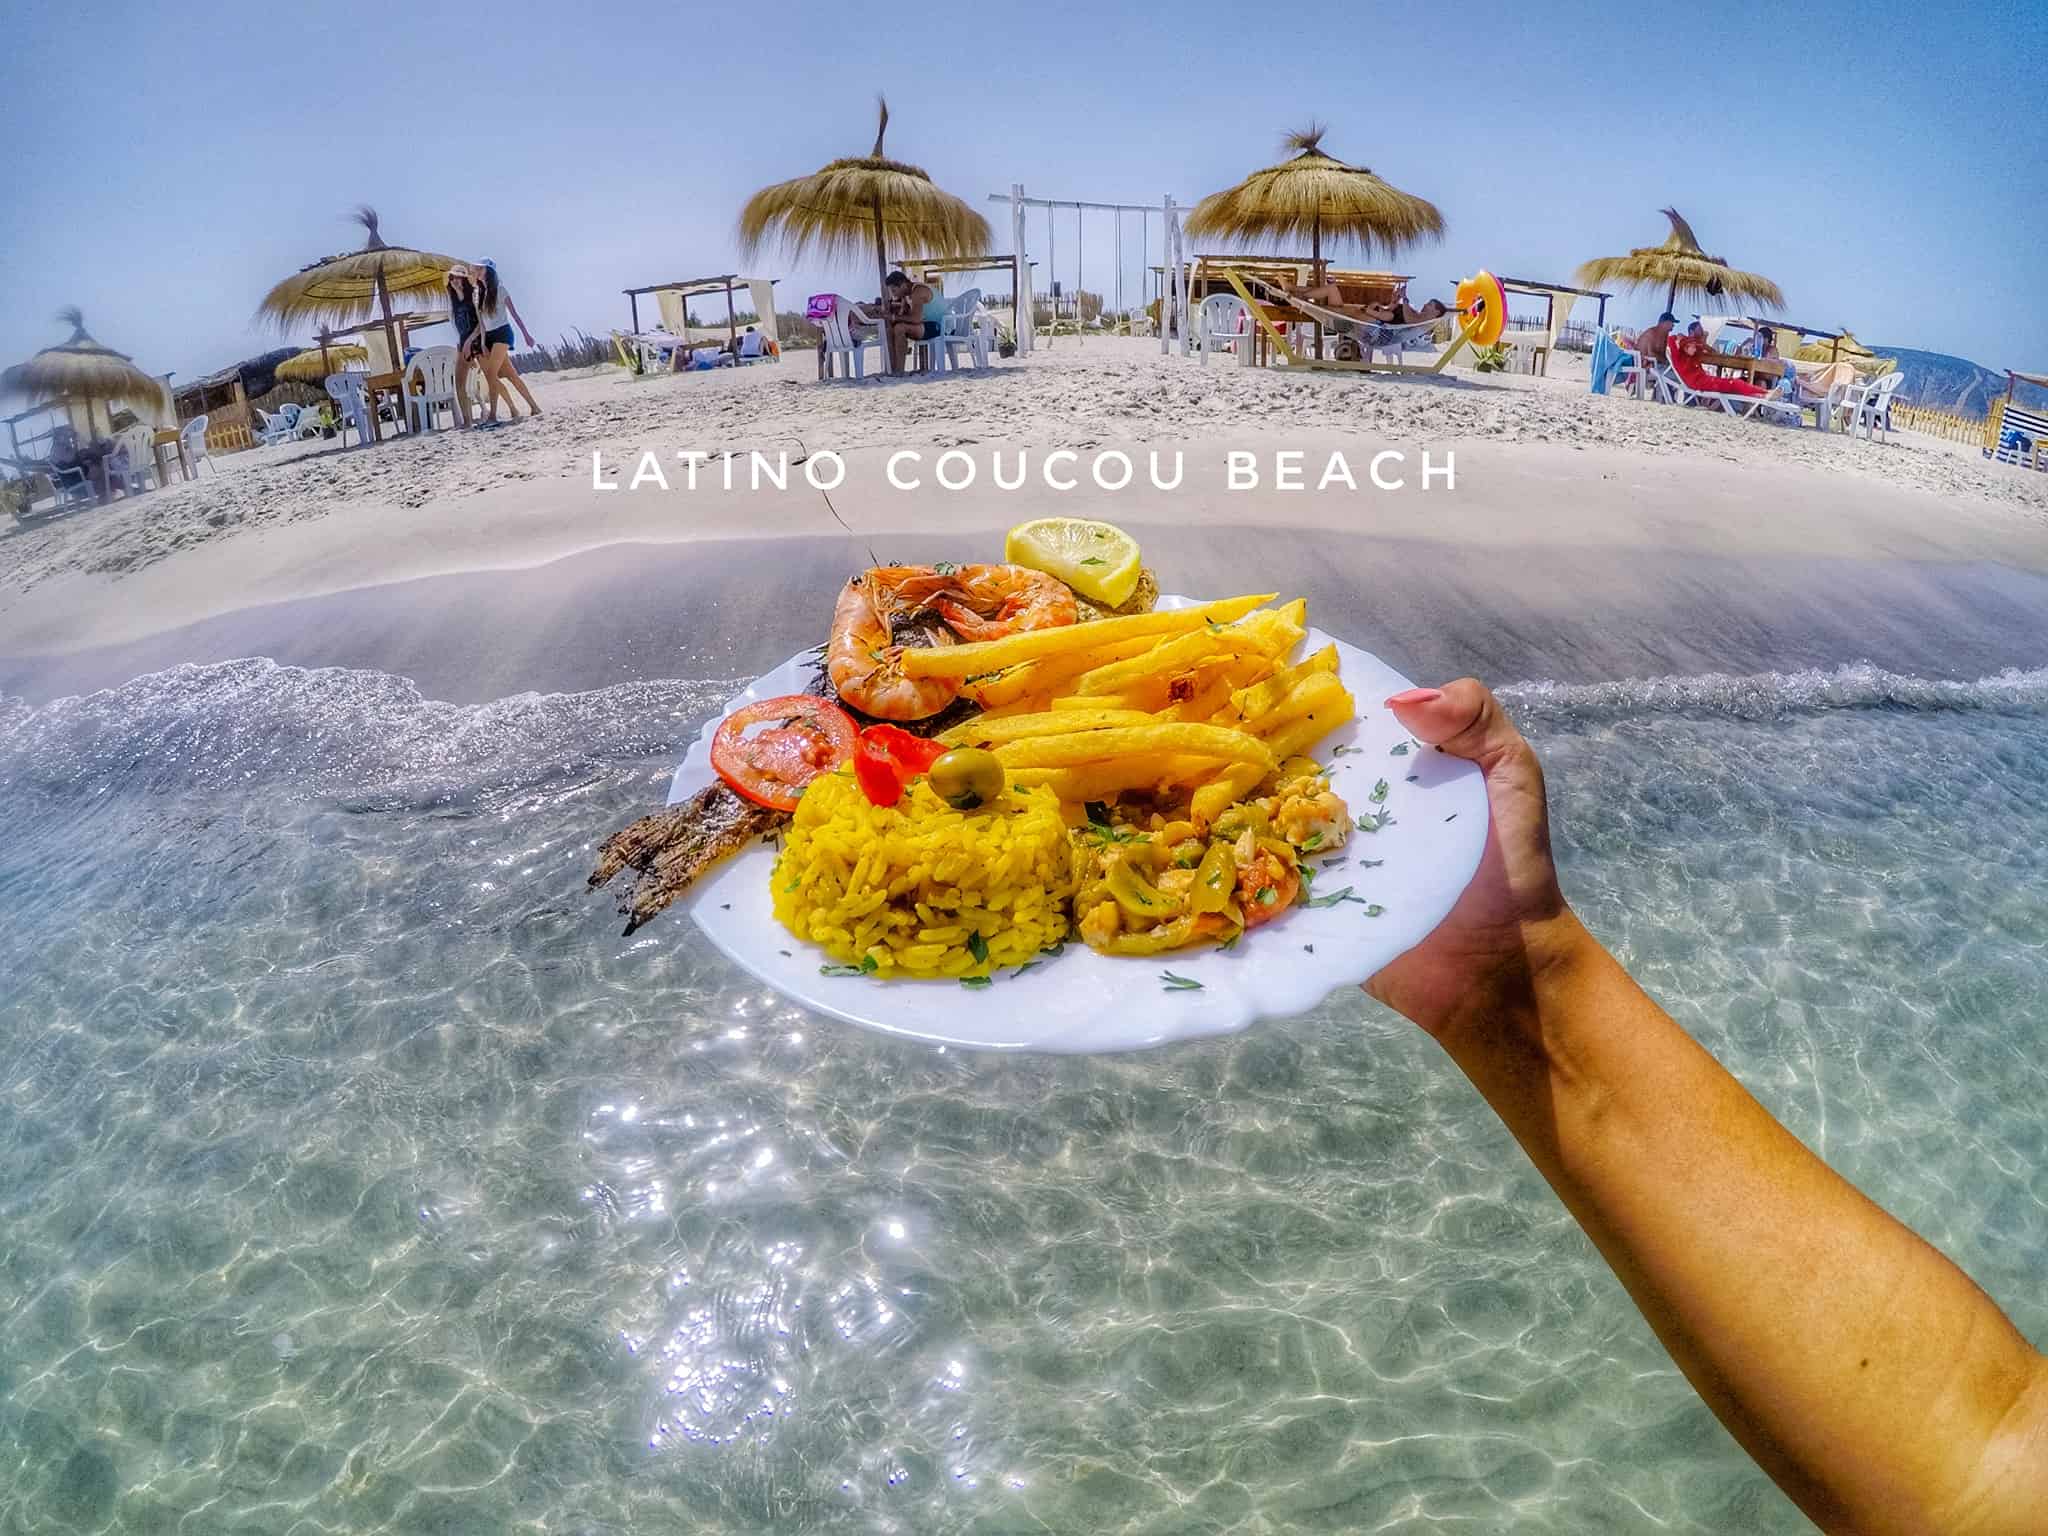 Latino Coucou Beach Bnina Tn On vous offre aussi gratuitement des hamacs,des transats prix : latino coucou beach bnina tn